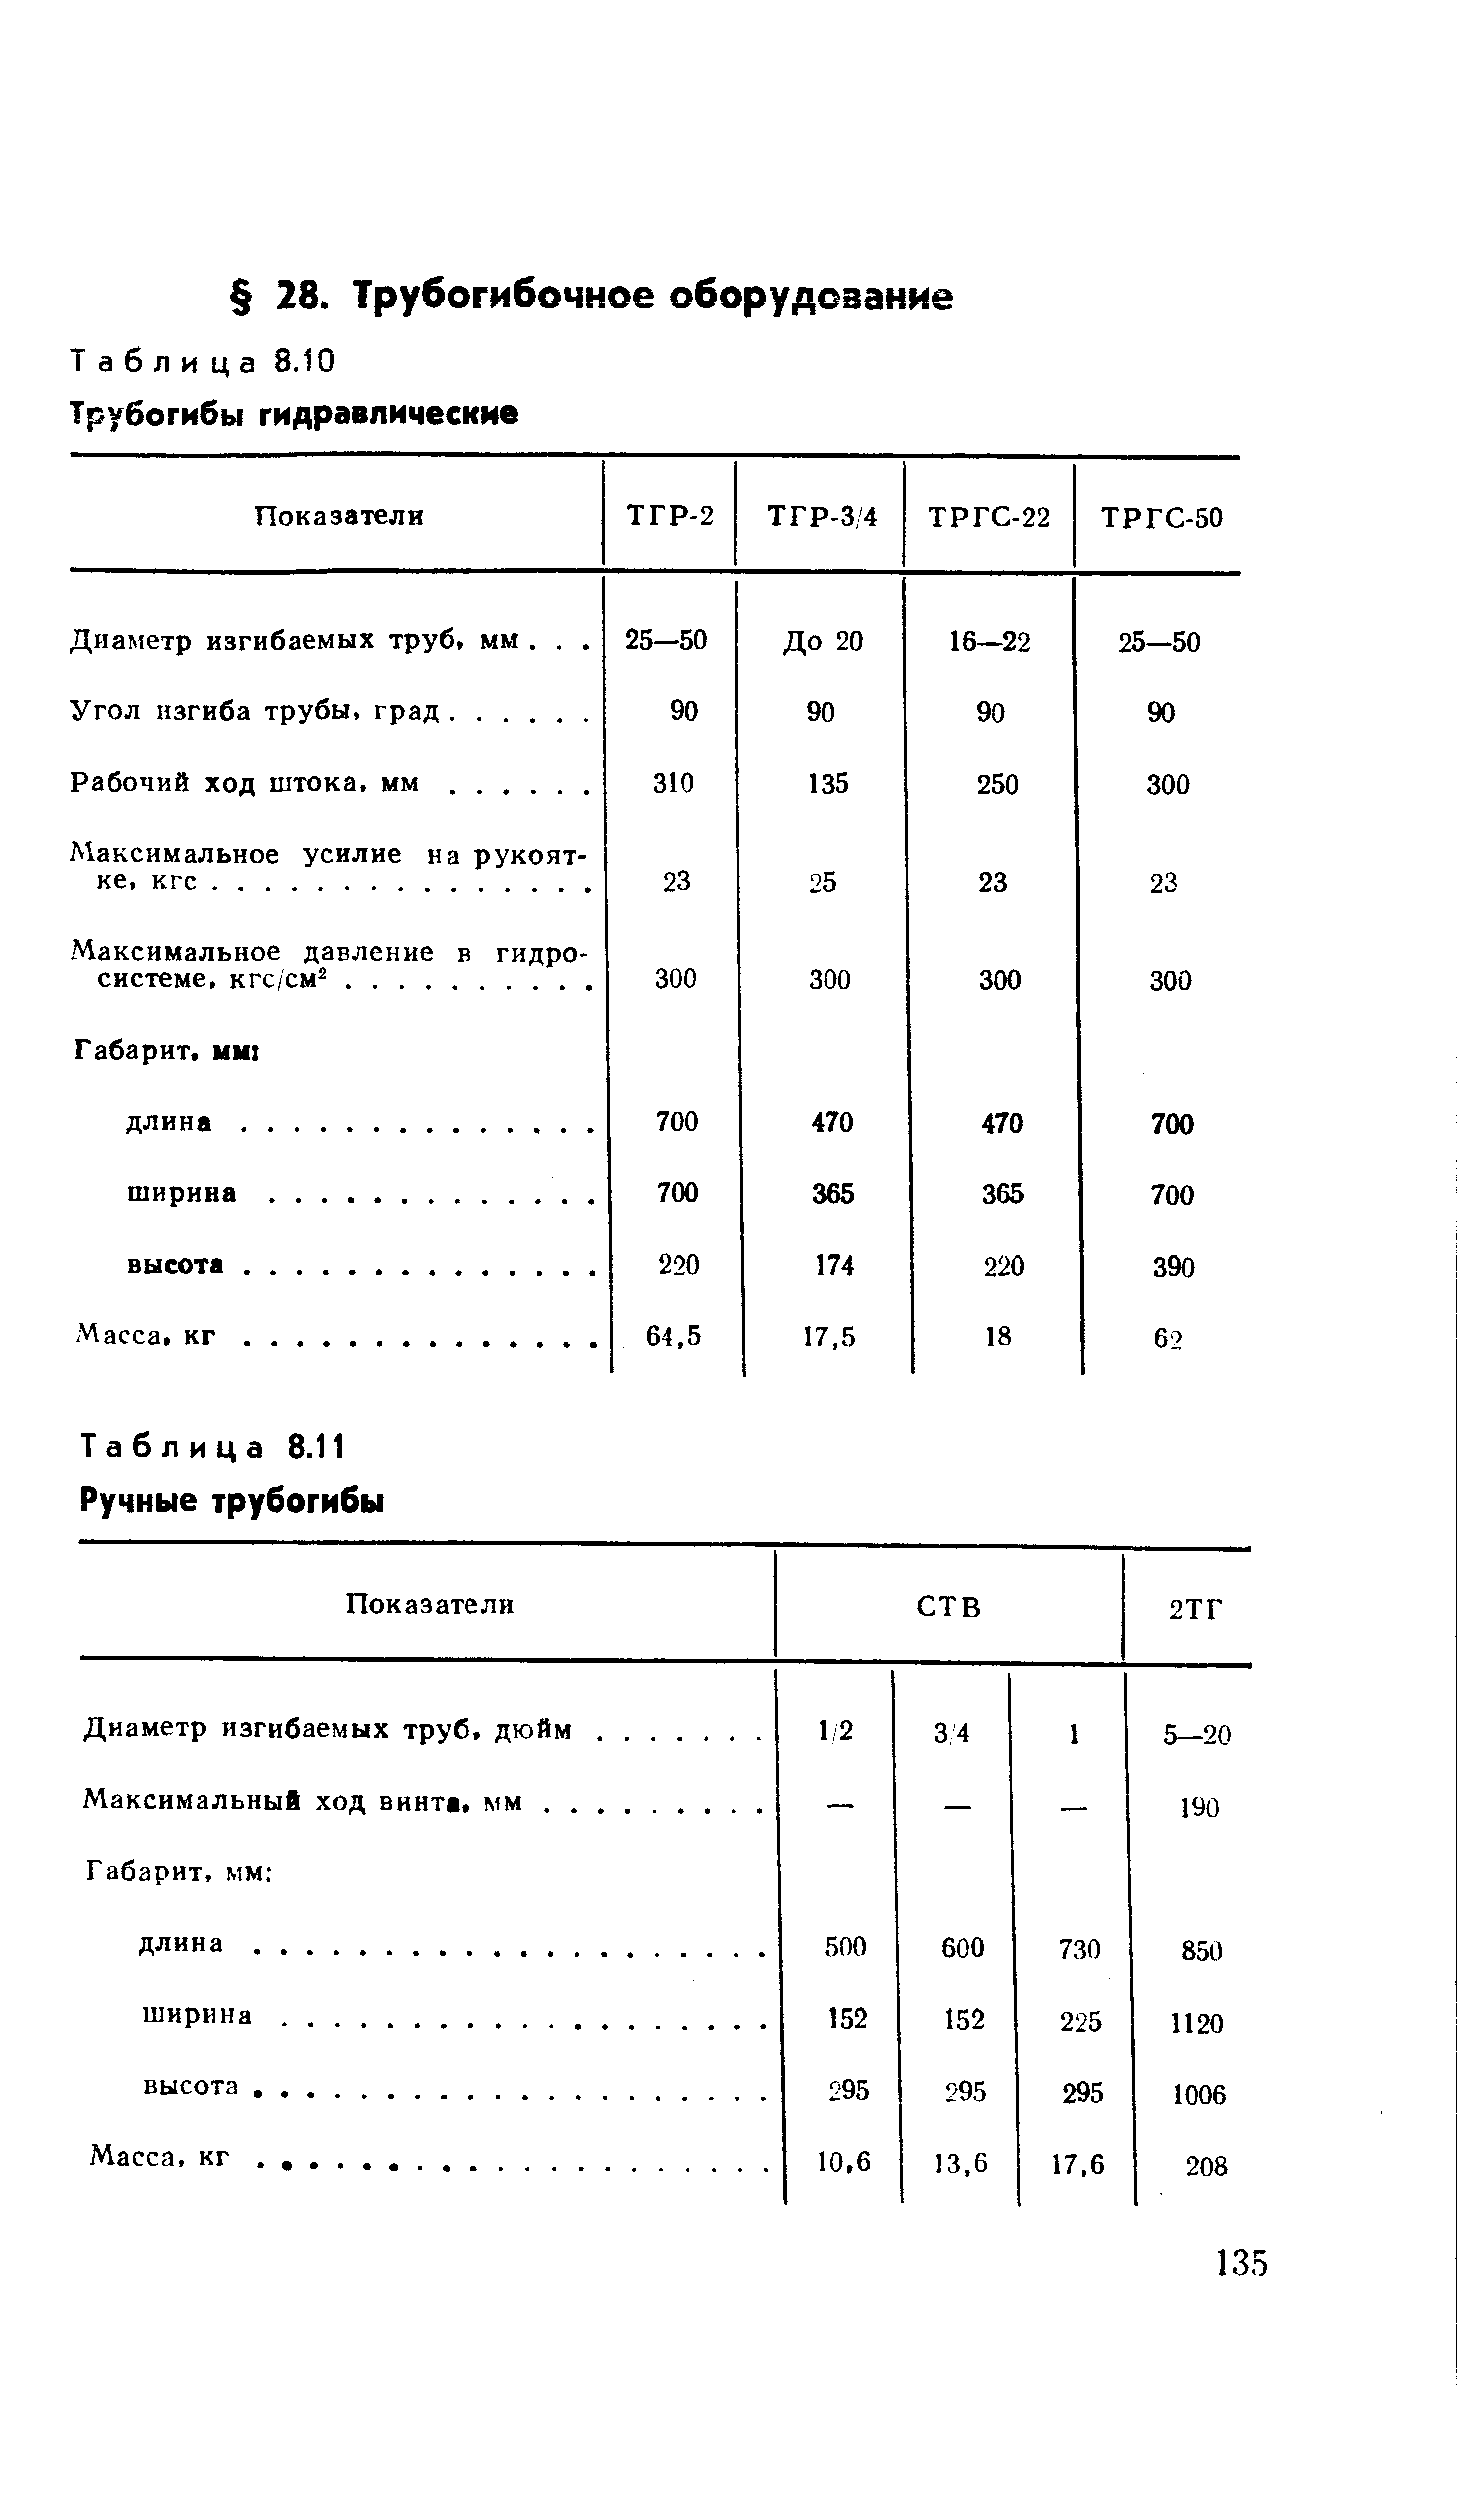 Таблица 8.10 Трубогибы гидравлические
